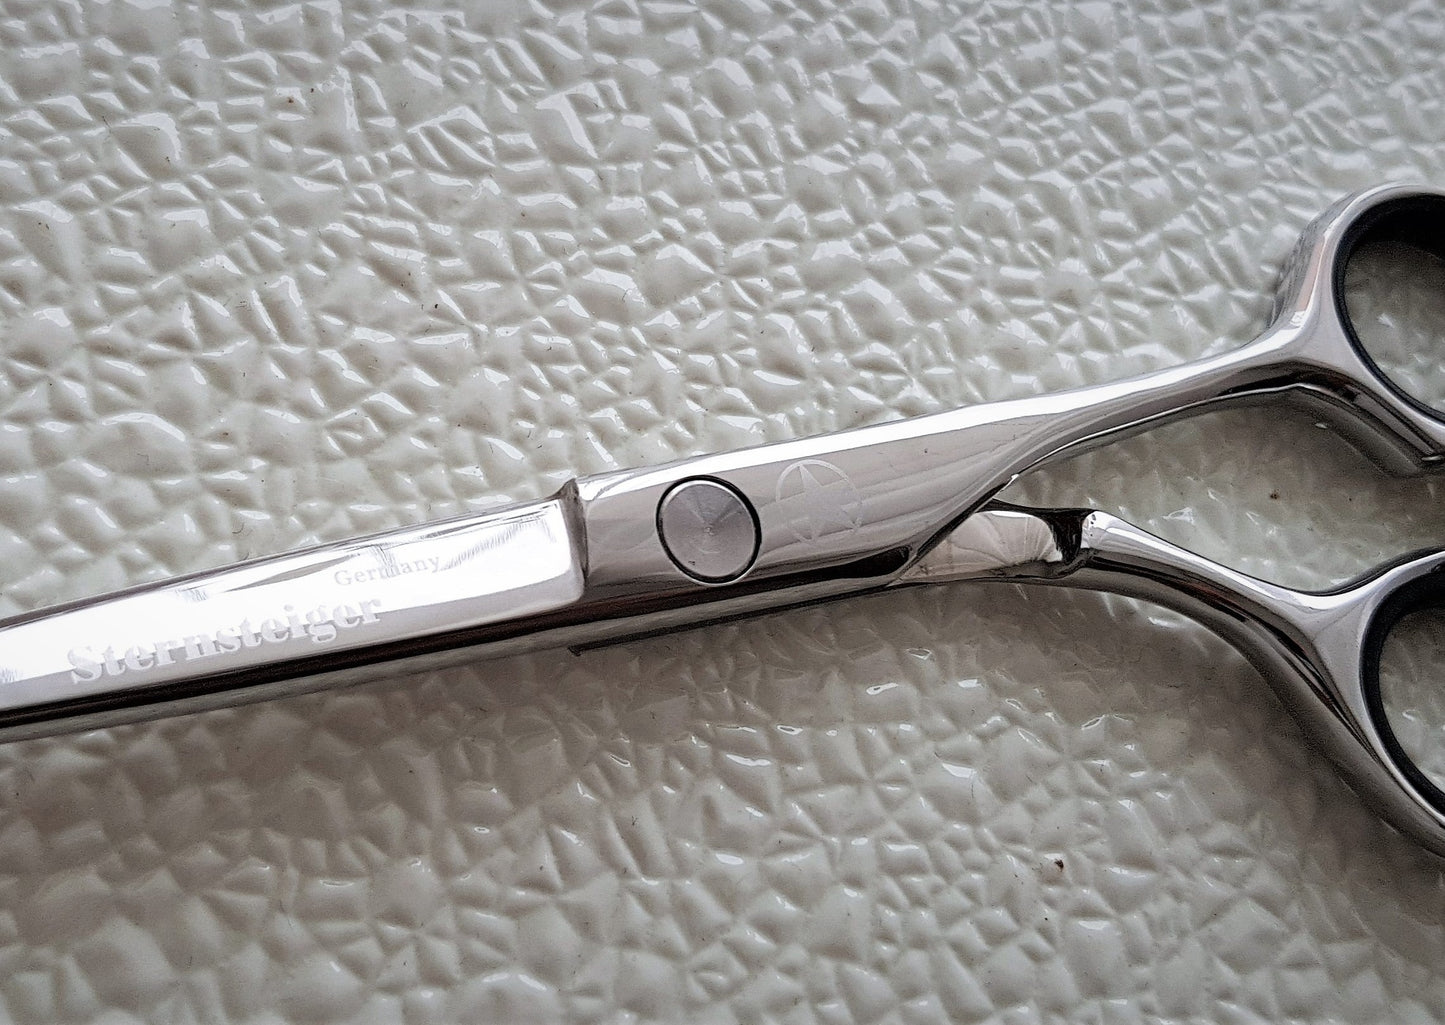 Sternsteiger Ergo -Blitz hair scissors 6.0 inch